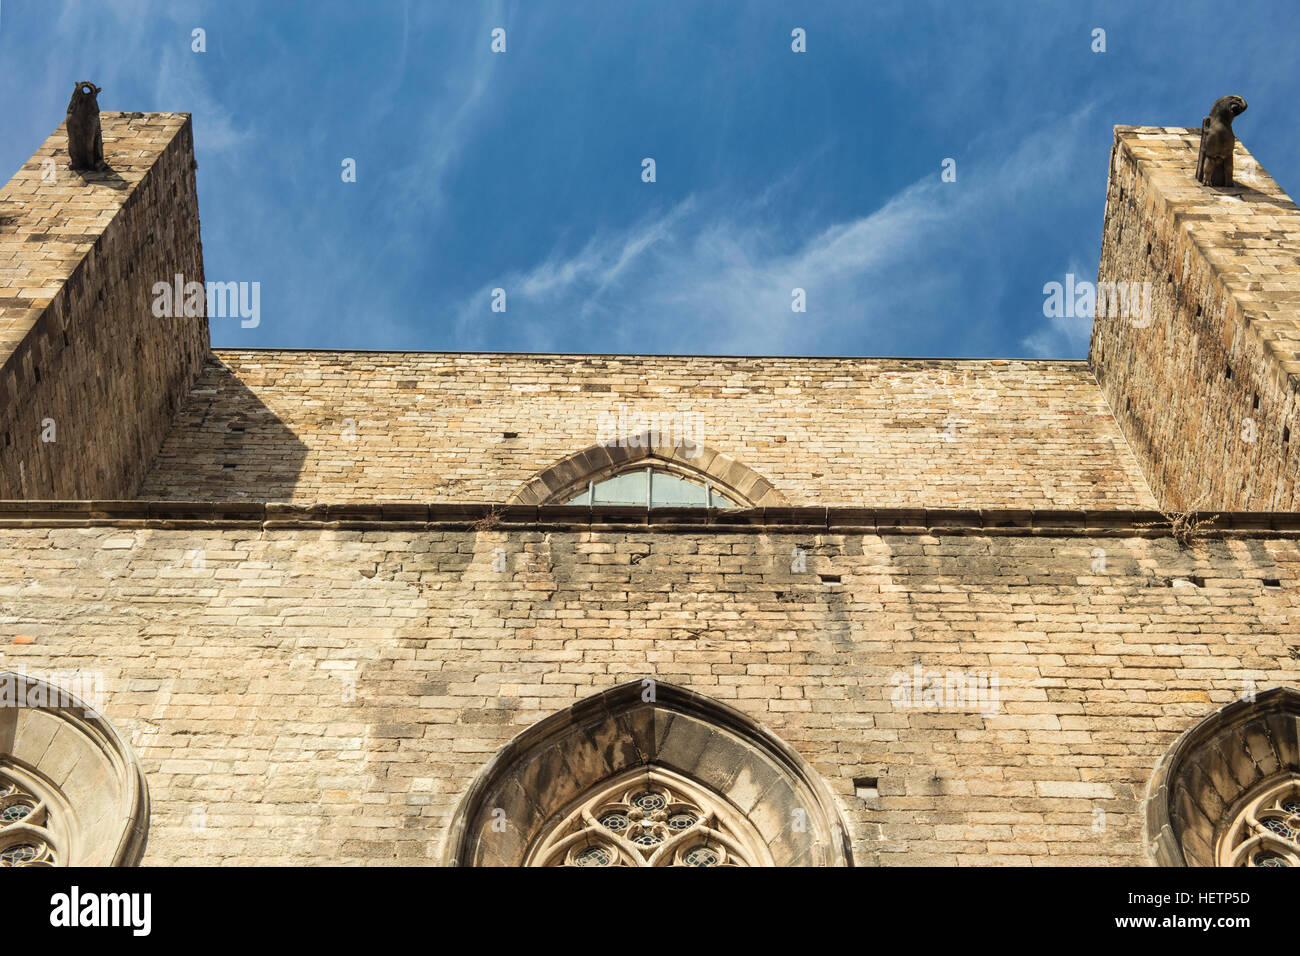 Santa Maria del Mar (Saint Mary's) nella cattedrale di Barcellona, Spagna. Si tratta di una chiesa gotico catalana costruita durante il 1329-1383. Foto Stock